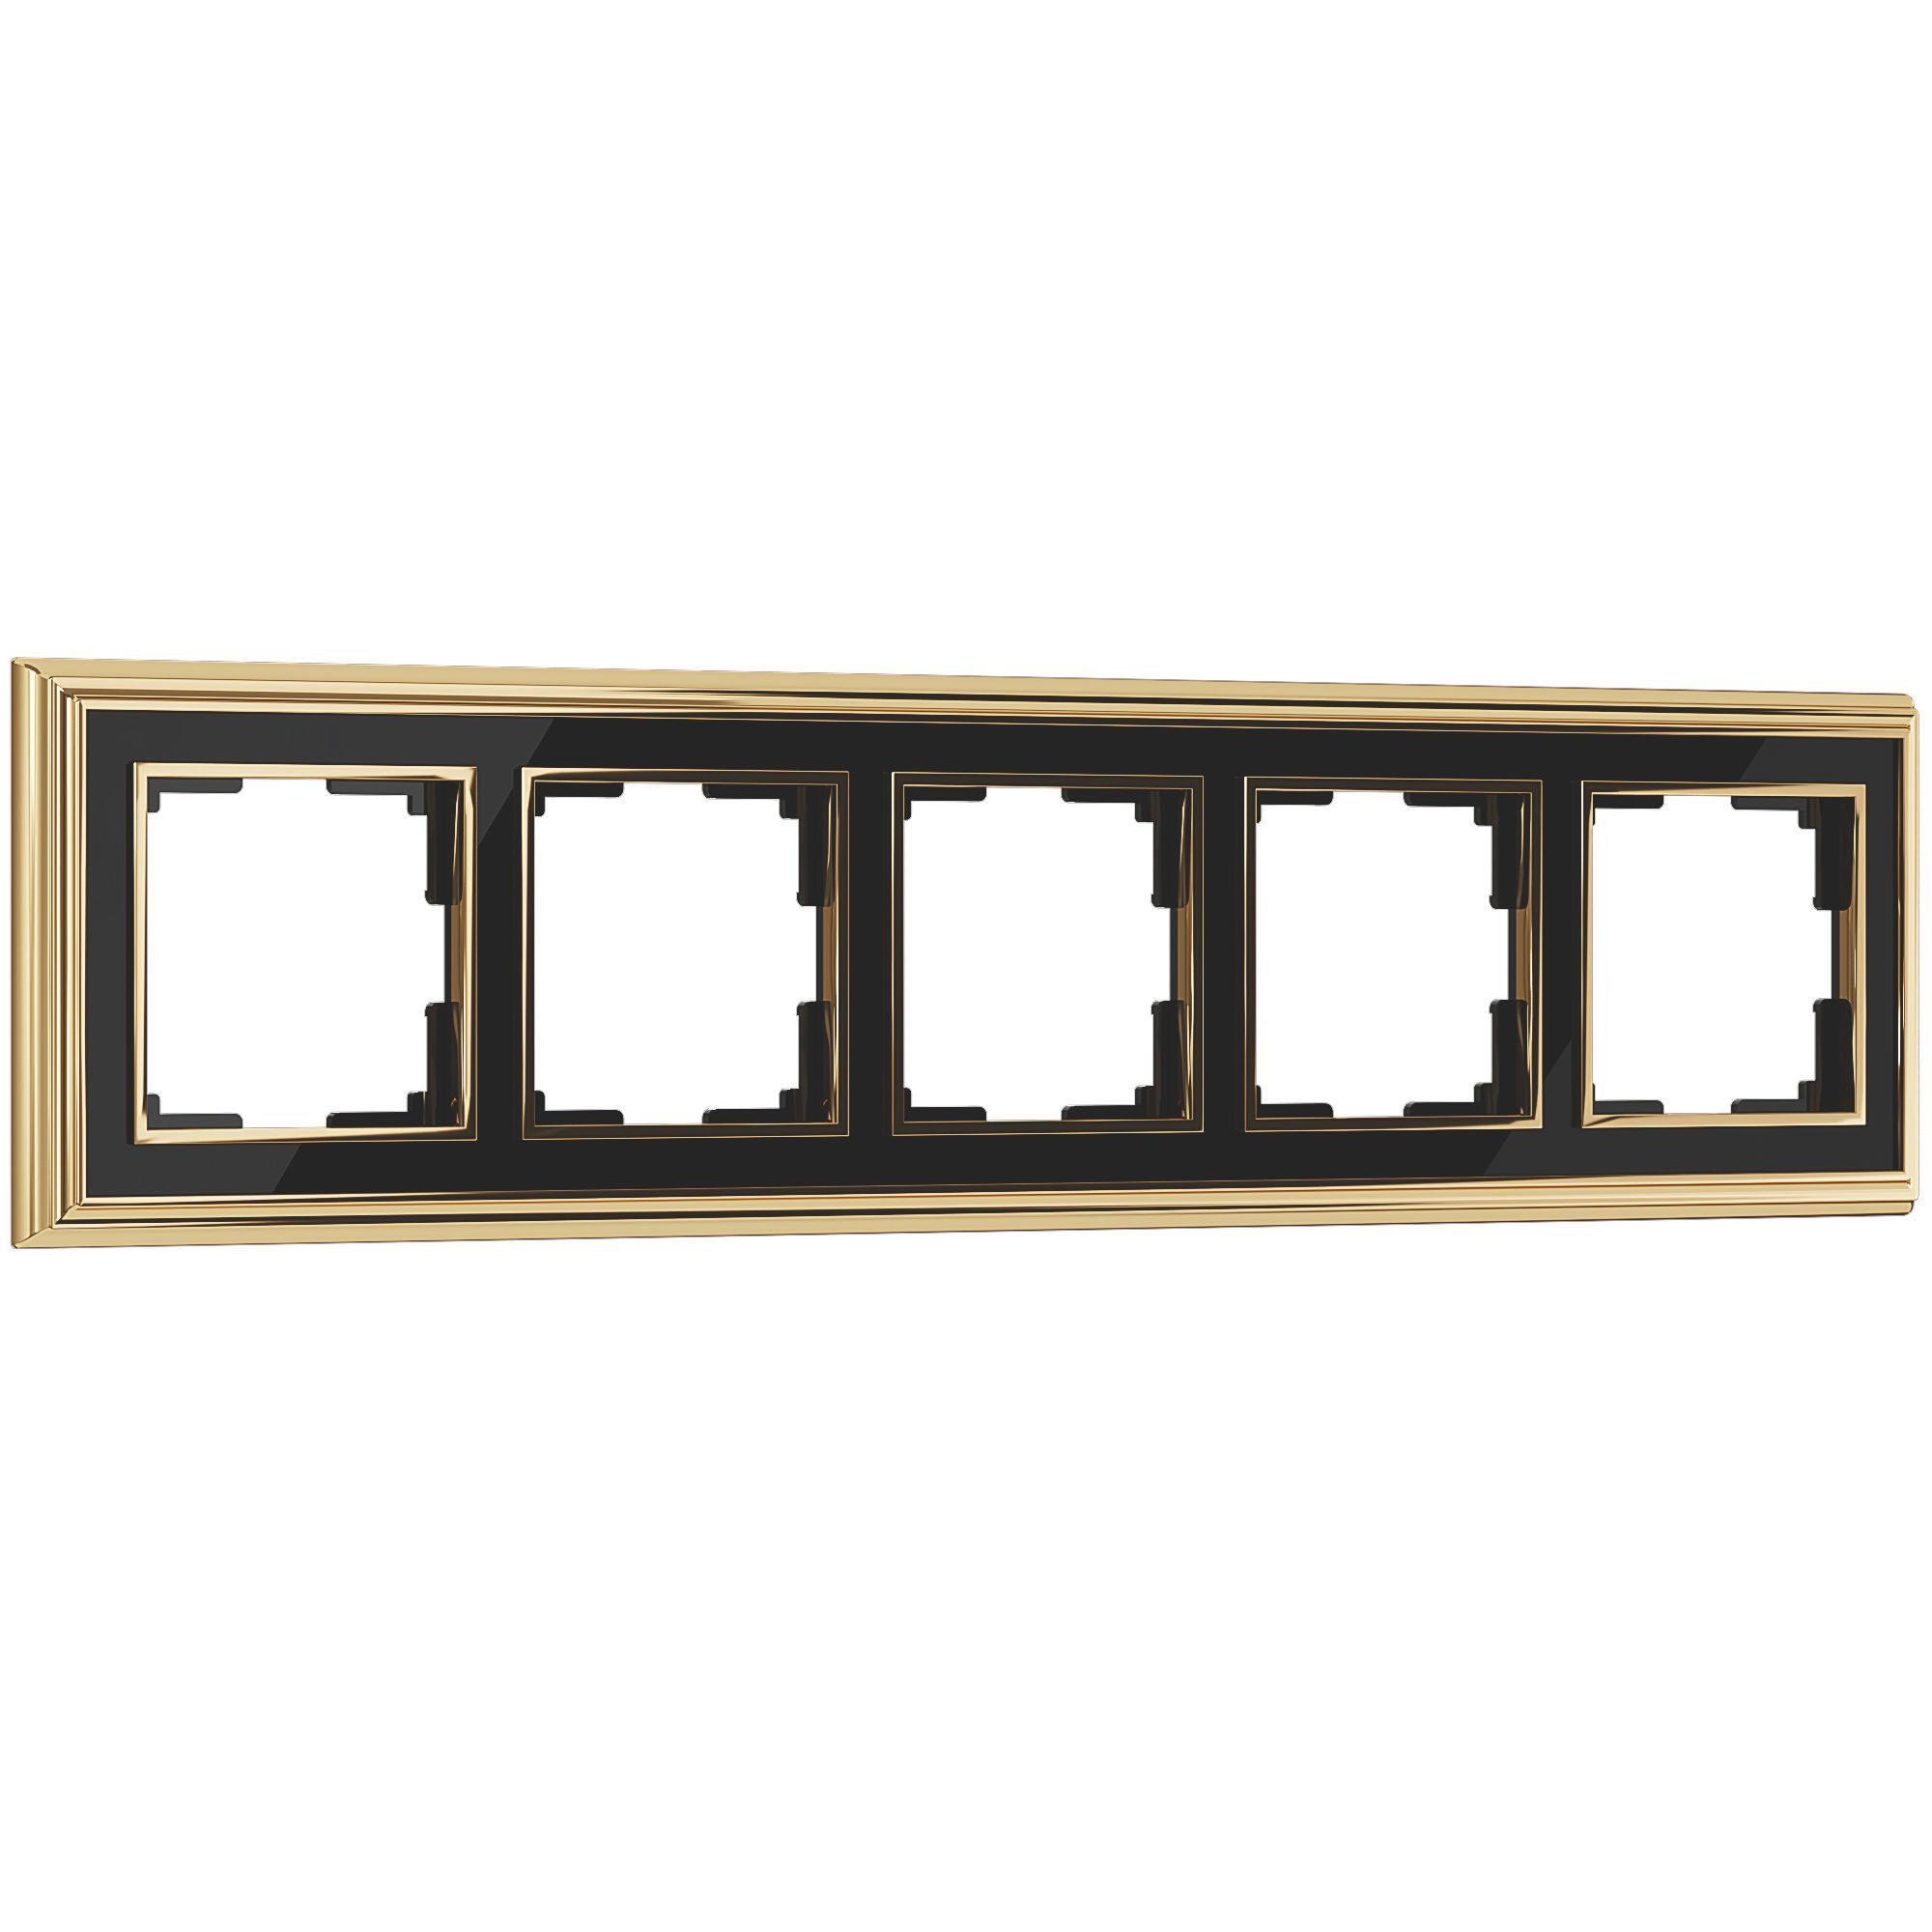 Рамка из металла на 5 постов Palacio золото/черный WL17-Frame-05. Фото 1